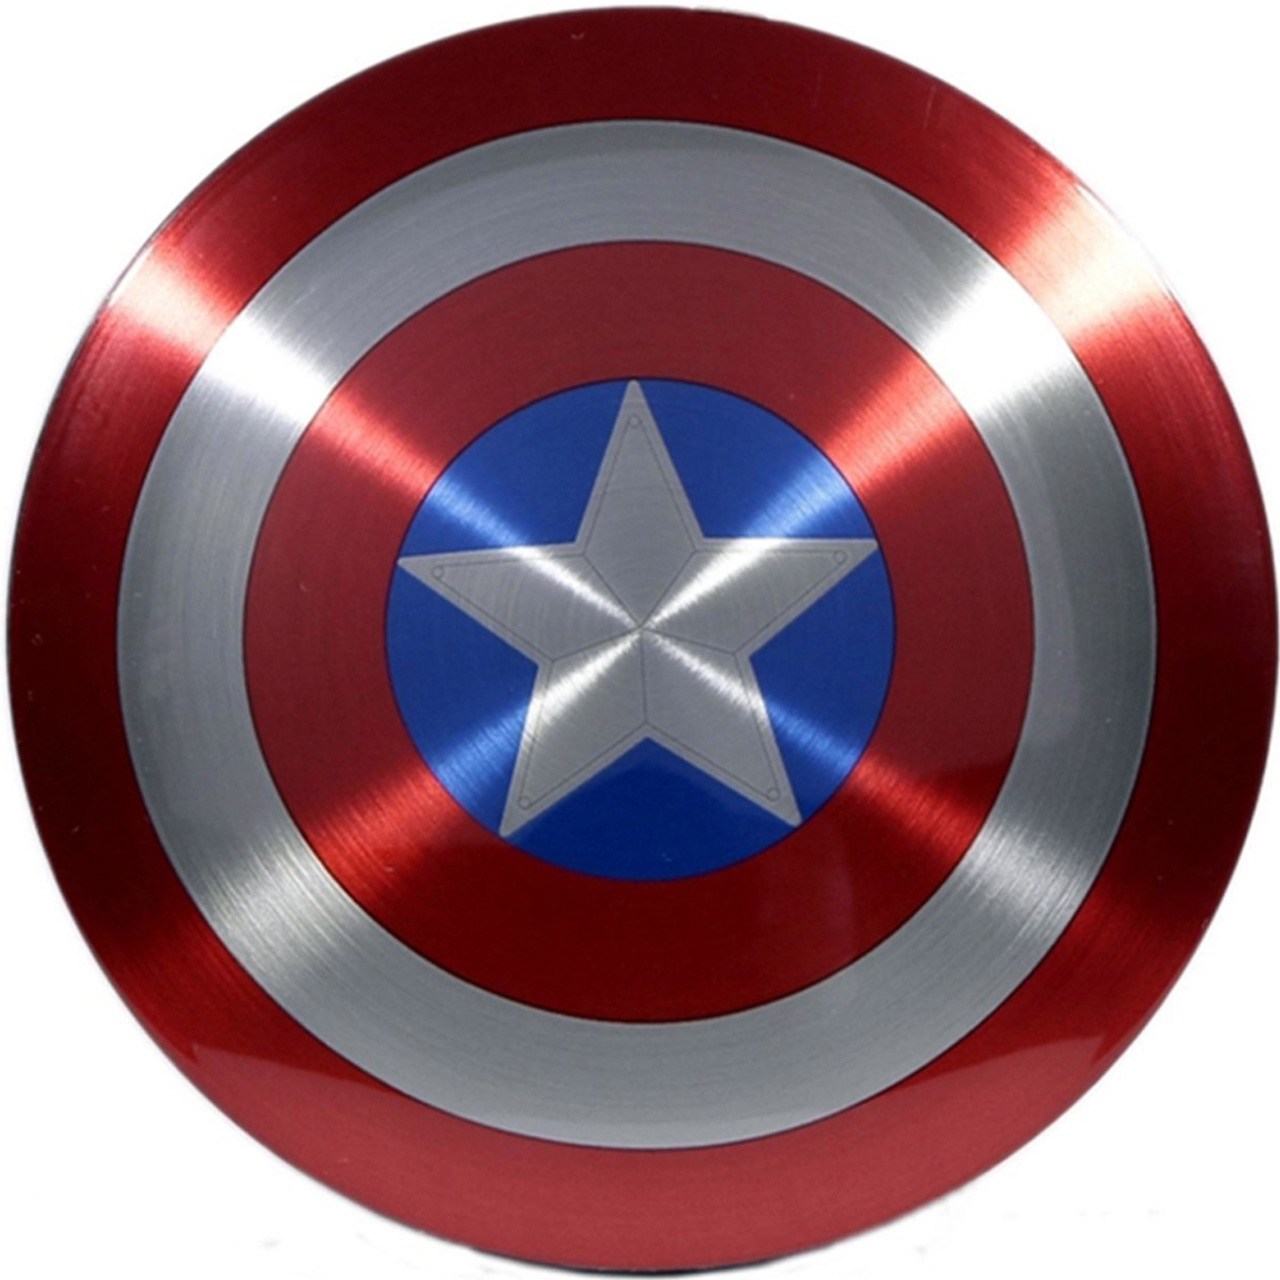 شارژر همراه مدل Marvel Avengers Captain America Shield با ظرفیت 6800 میلی آمپر